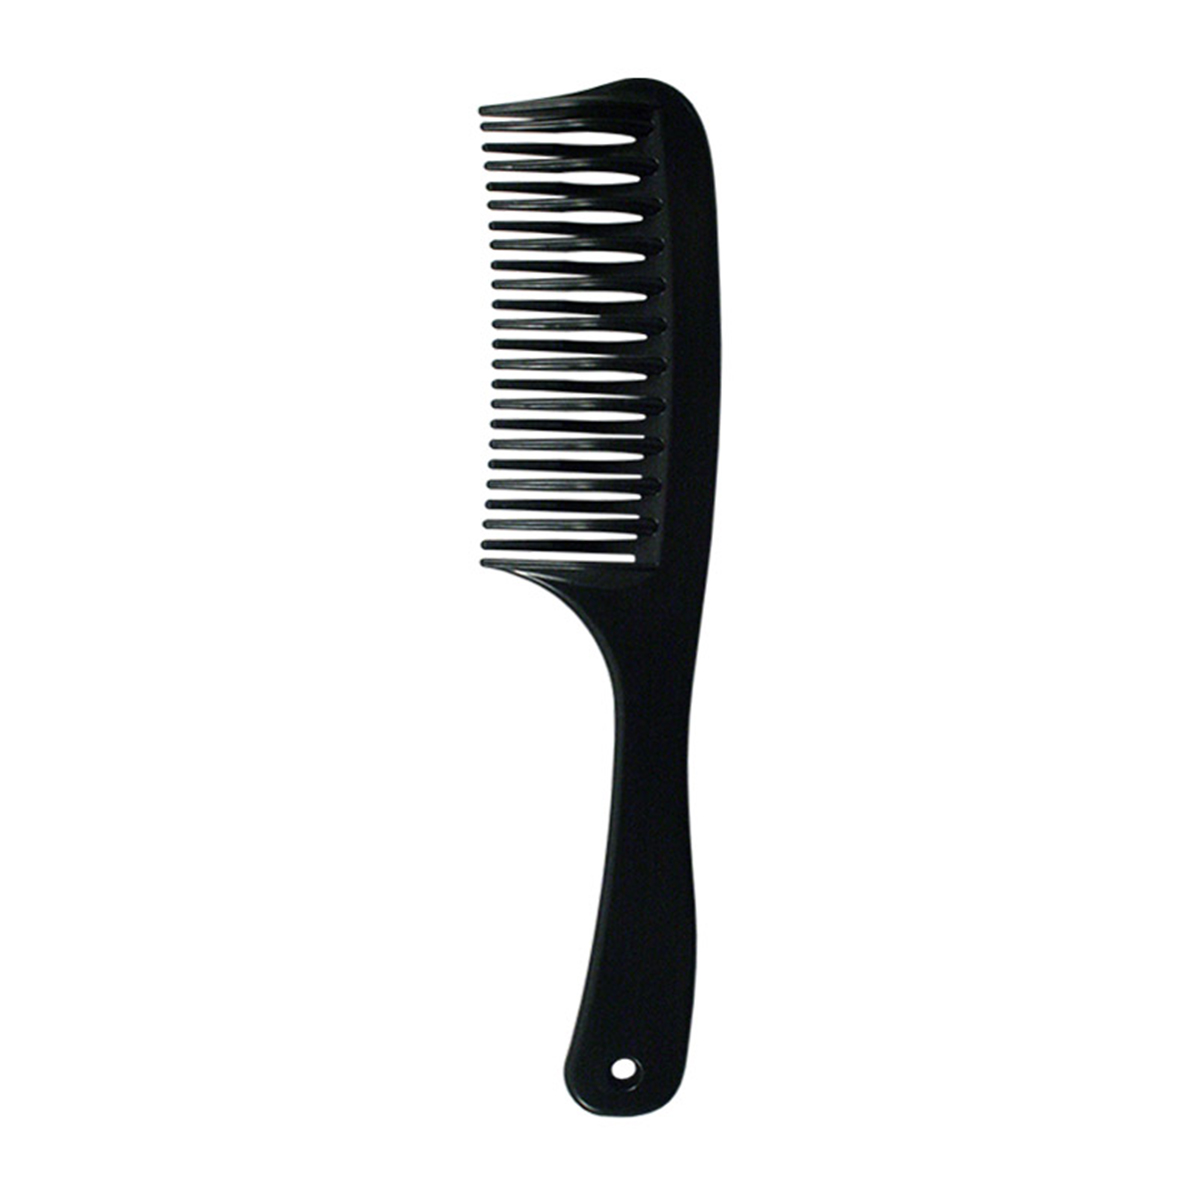 Гребень для волос Lei пластик 041, черный, 205х45 мм массажная расческа для волос с комбинированной щетиной чёрная